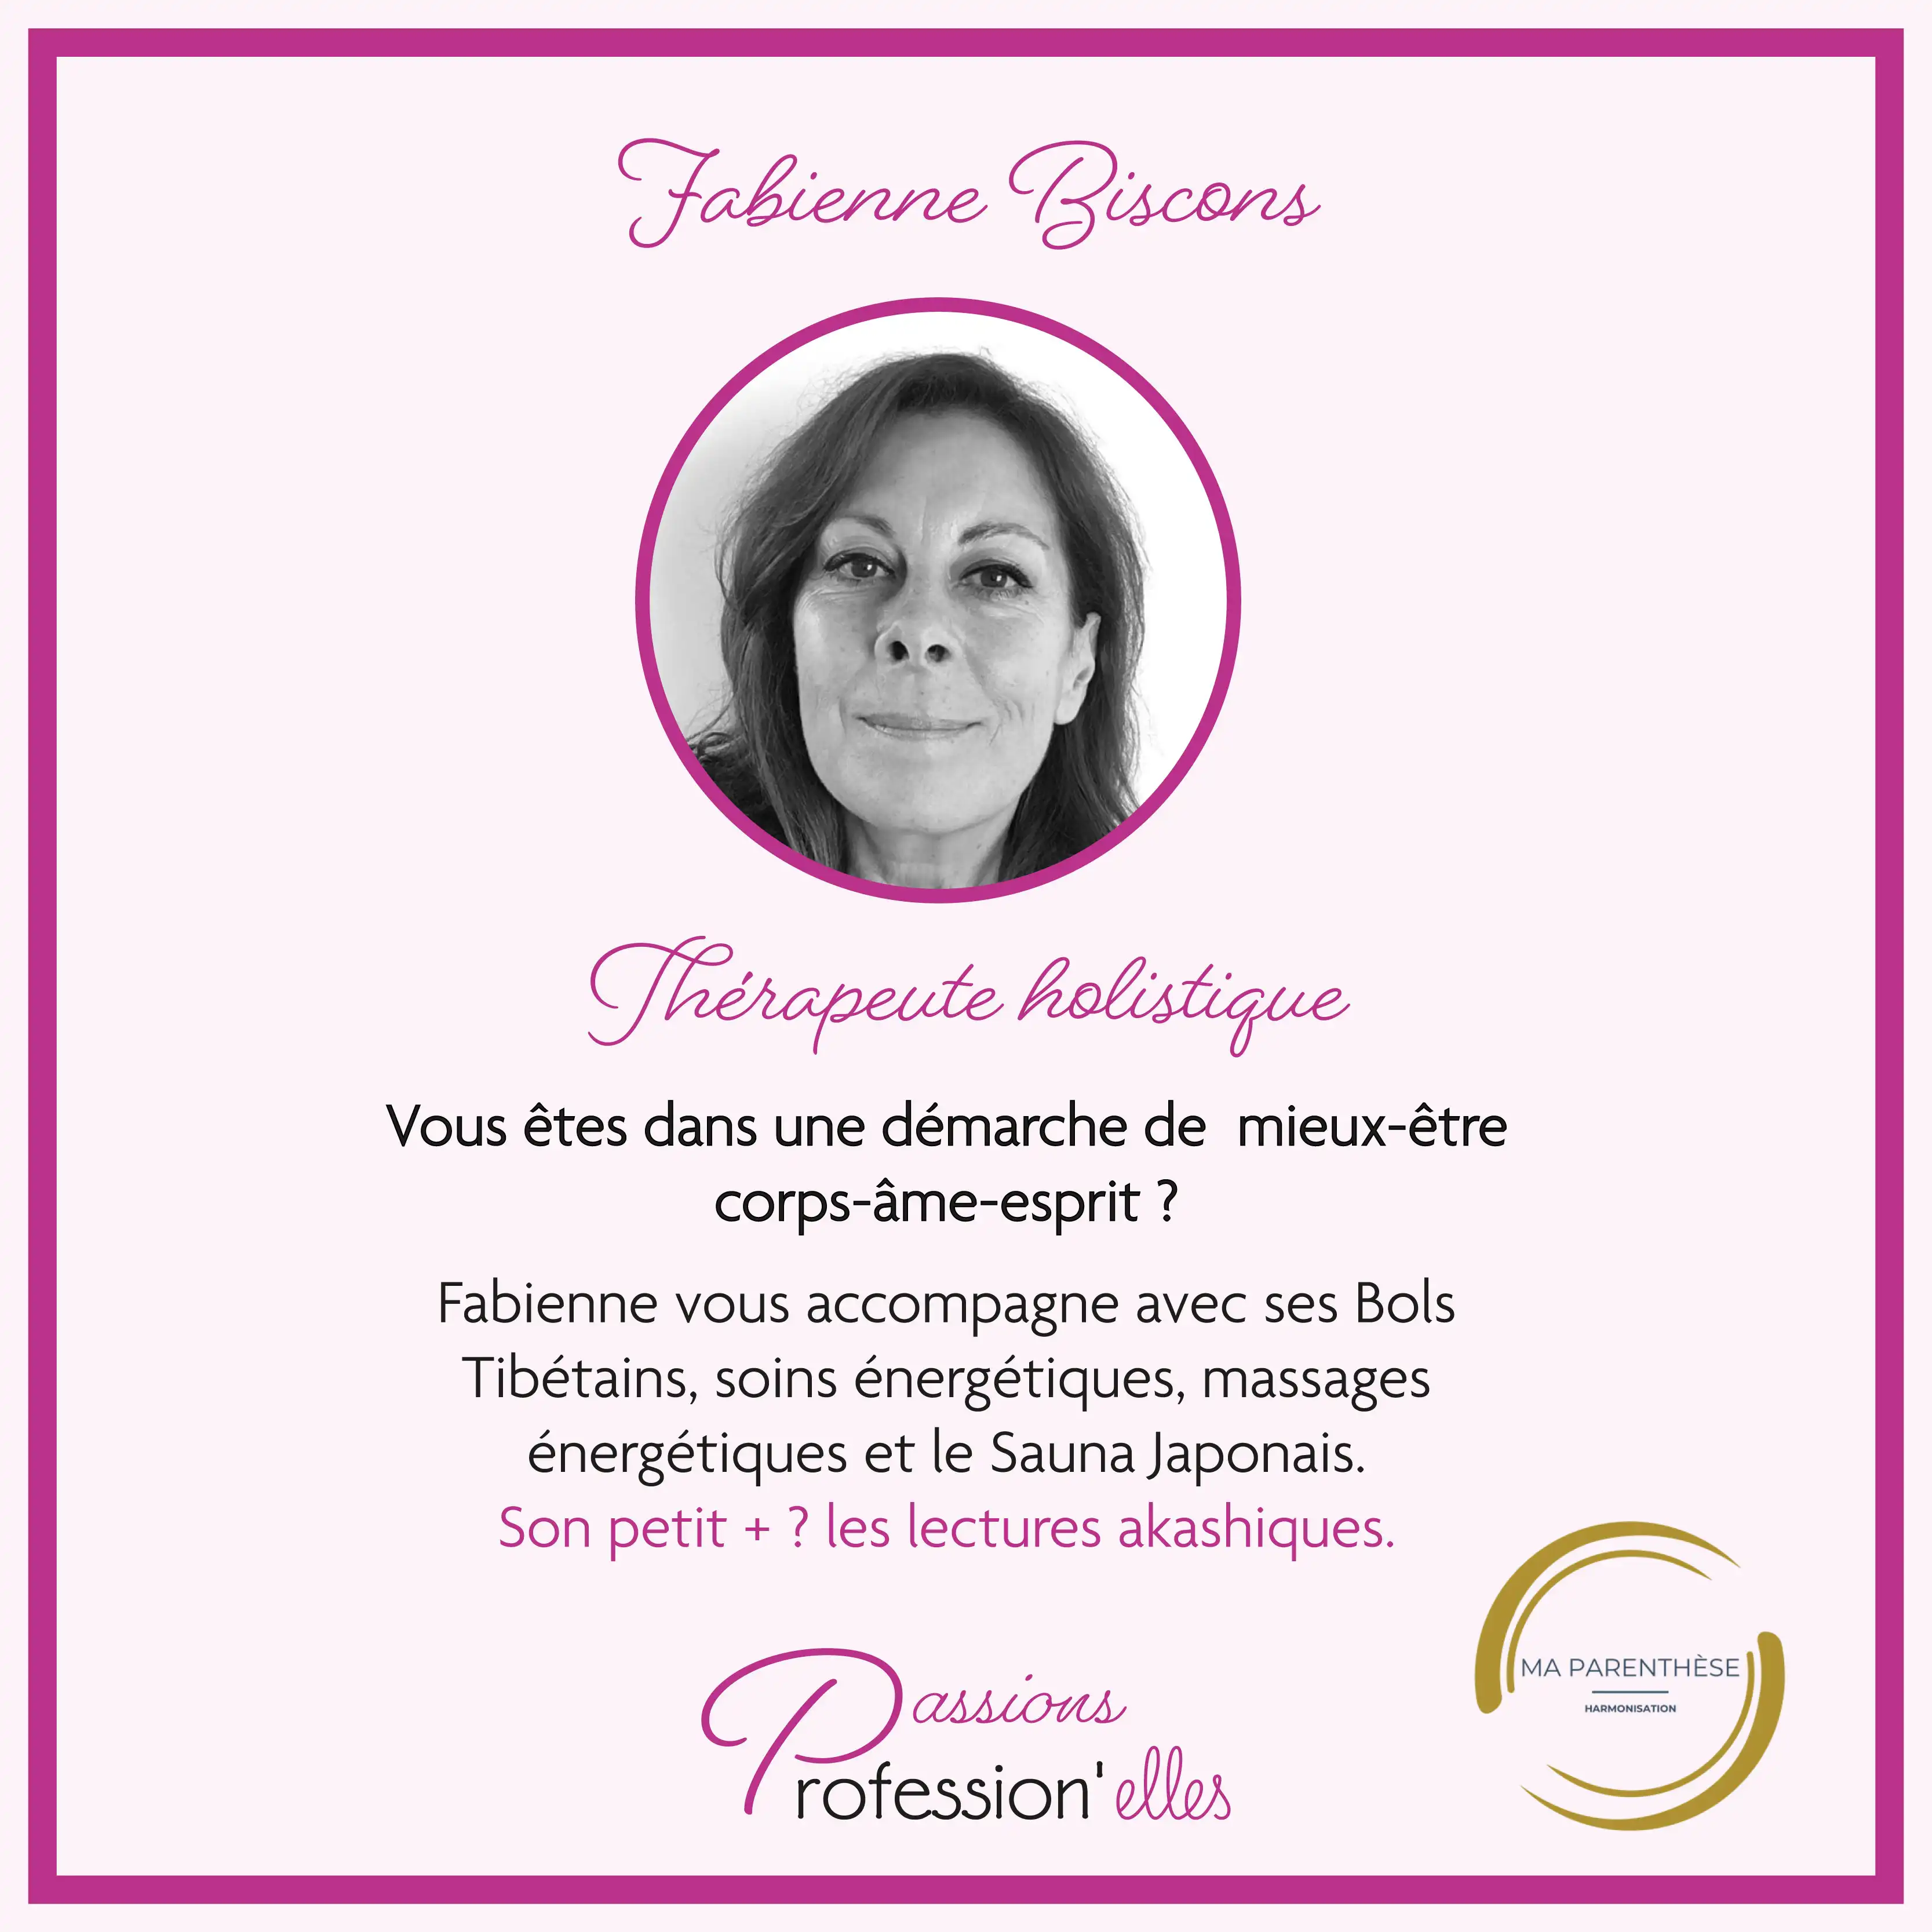 Fabienne Biscons, thérapeute holistique